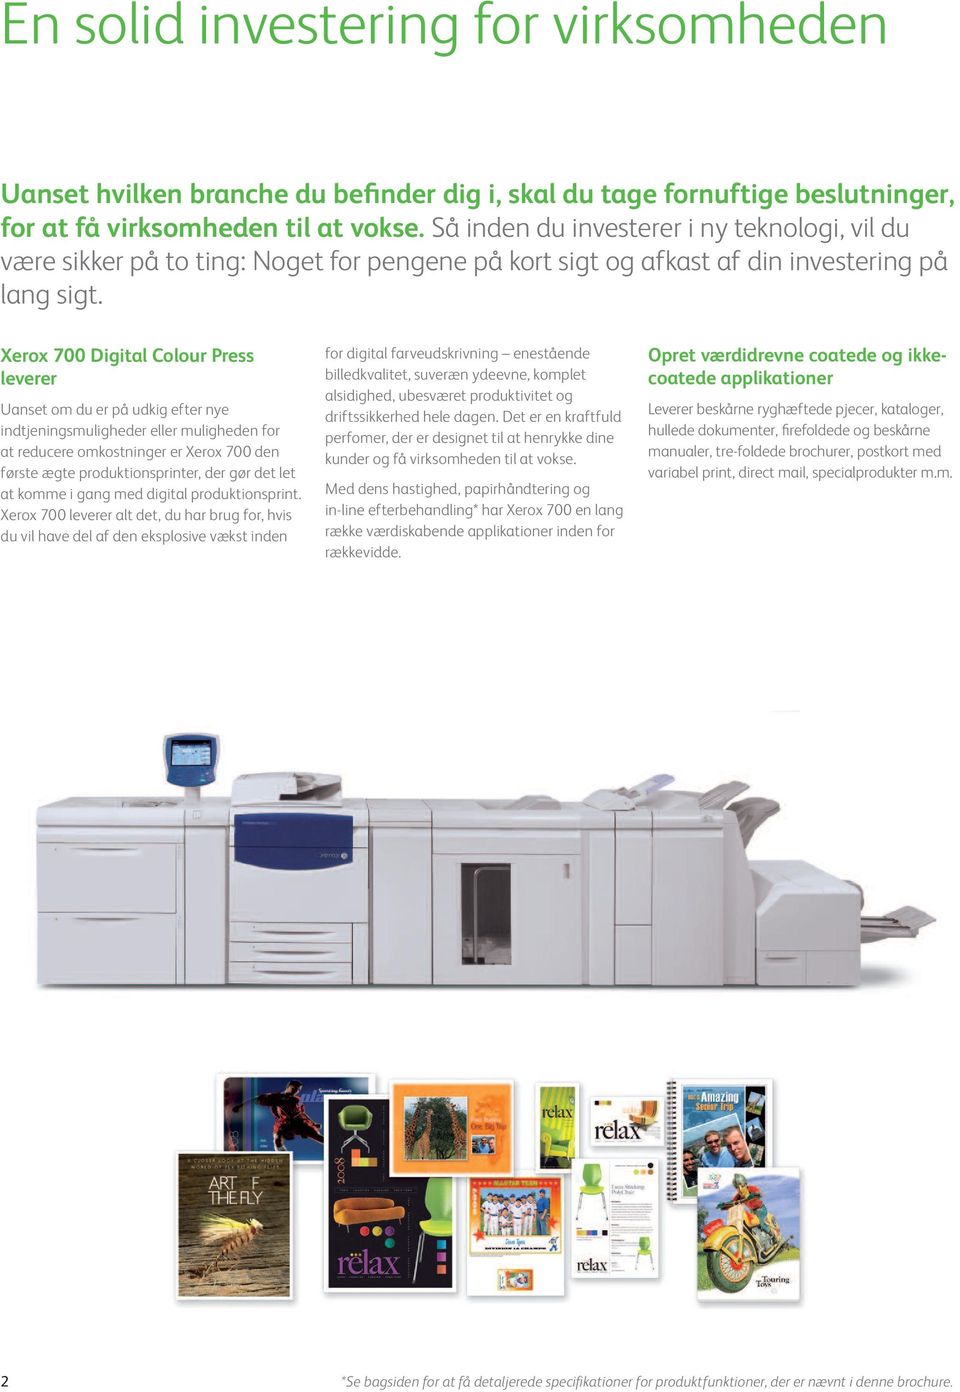 Xerox 700 Digital Colour Press leverer Uanset om du er på udkig efter nye indtjeningsmuligheder eller muligheden for at reducere omkostninger er Xerox 700 den første ægte produktionsprinter, der gør